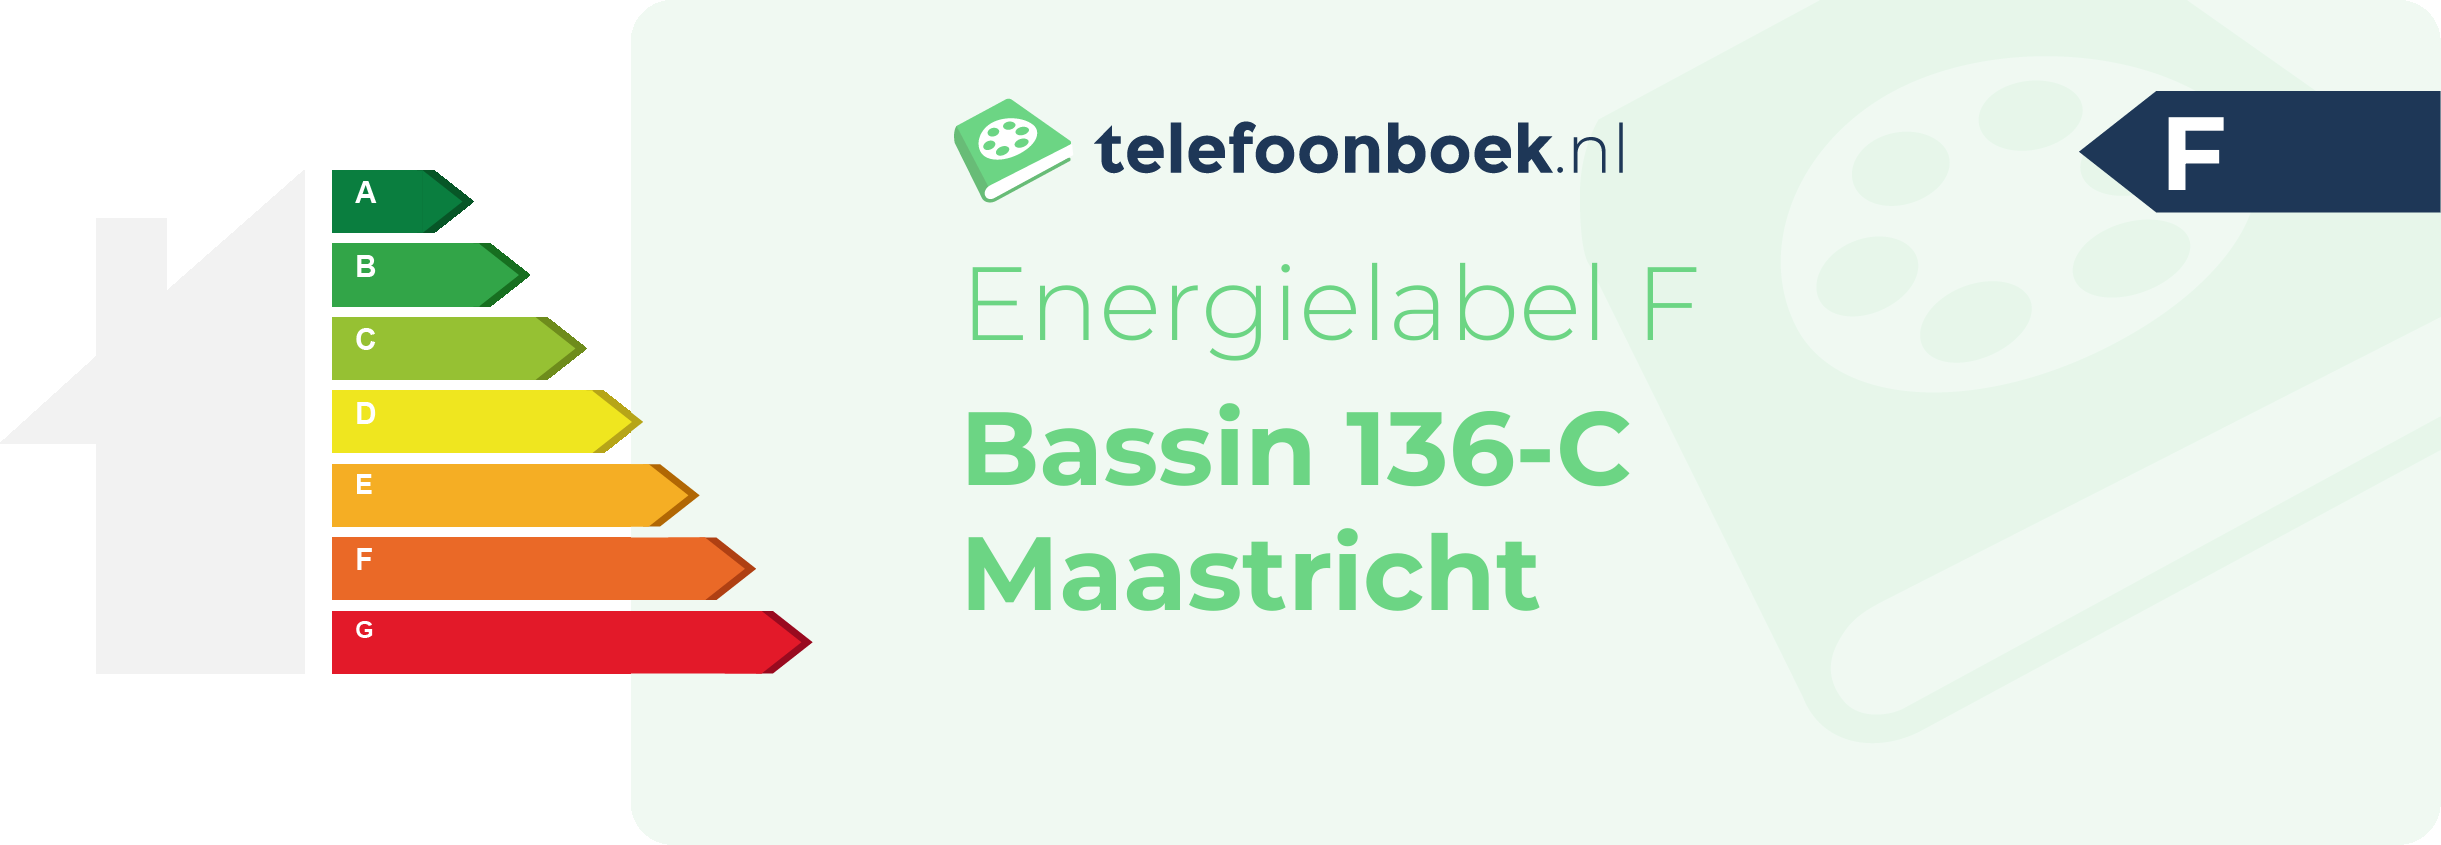 Energielabel Bassin 136-C Maastricht